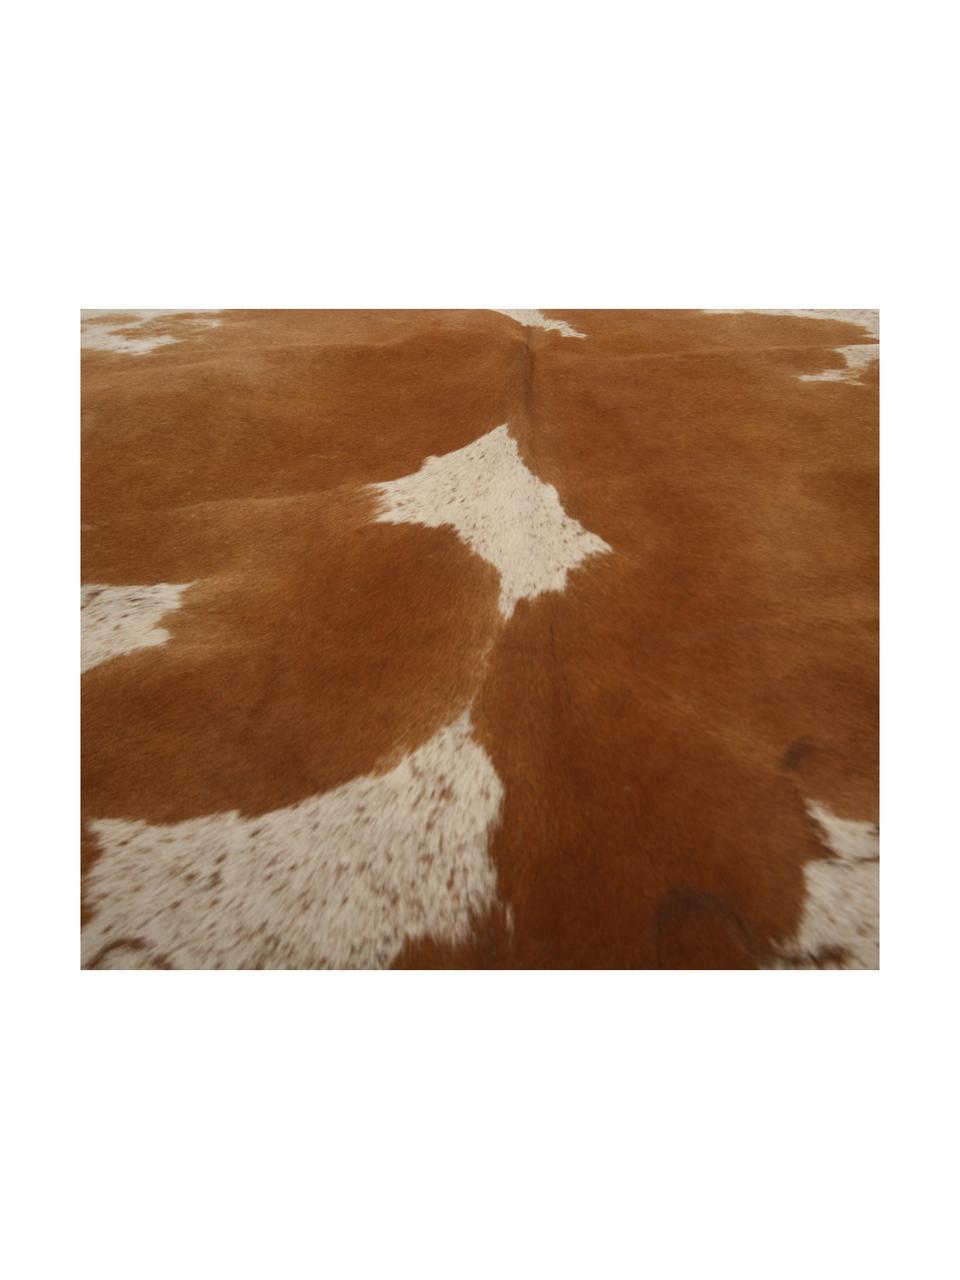 Koeienhuid Jura, Koeienhuid, Bruin, Beige, Unieke koeienhuid 983, 160 x 180 cm